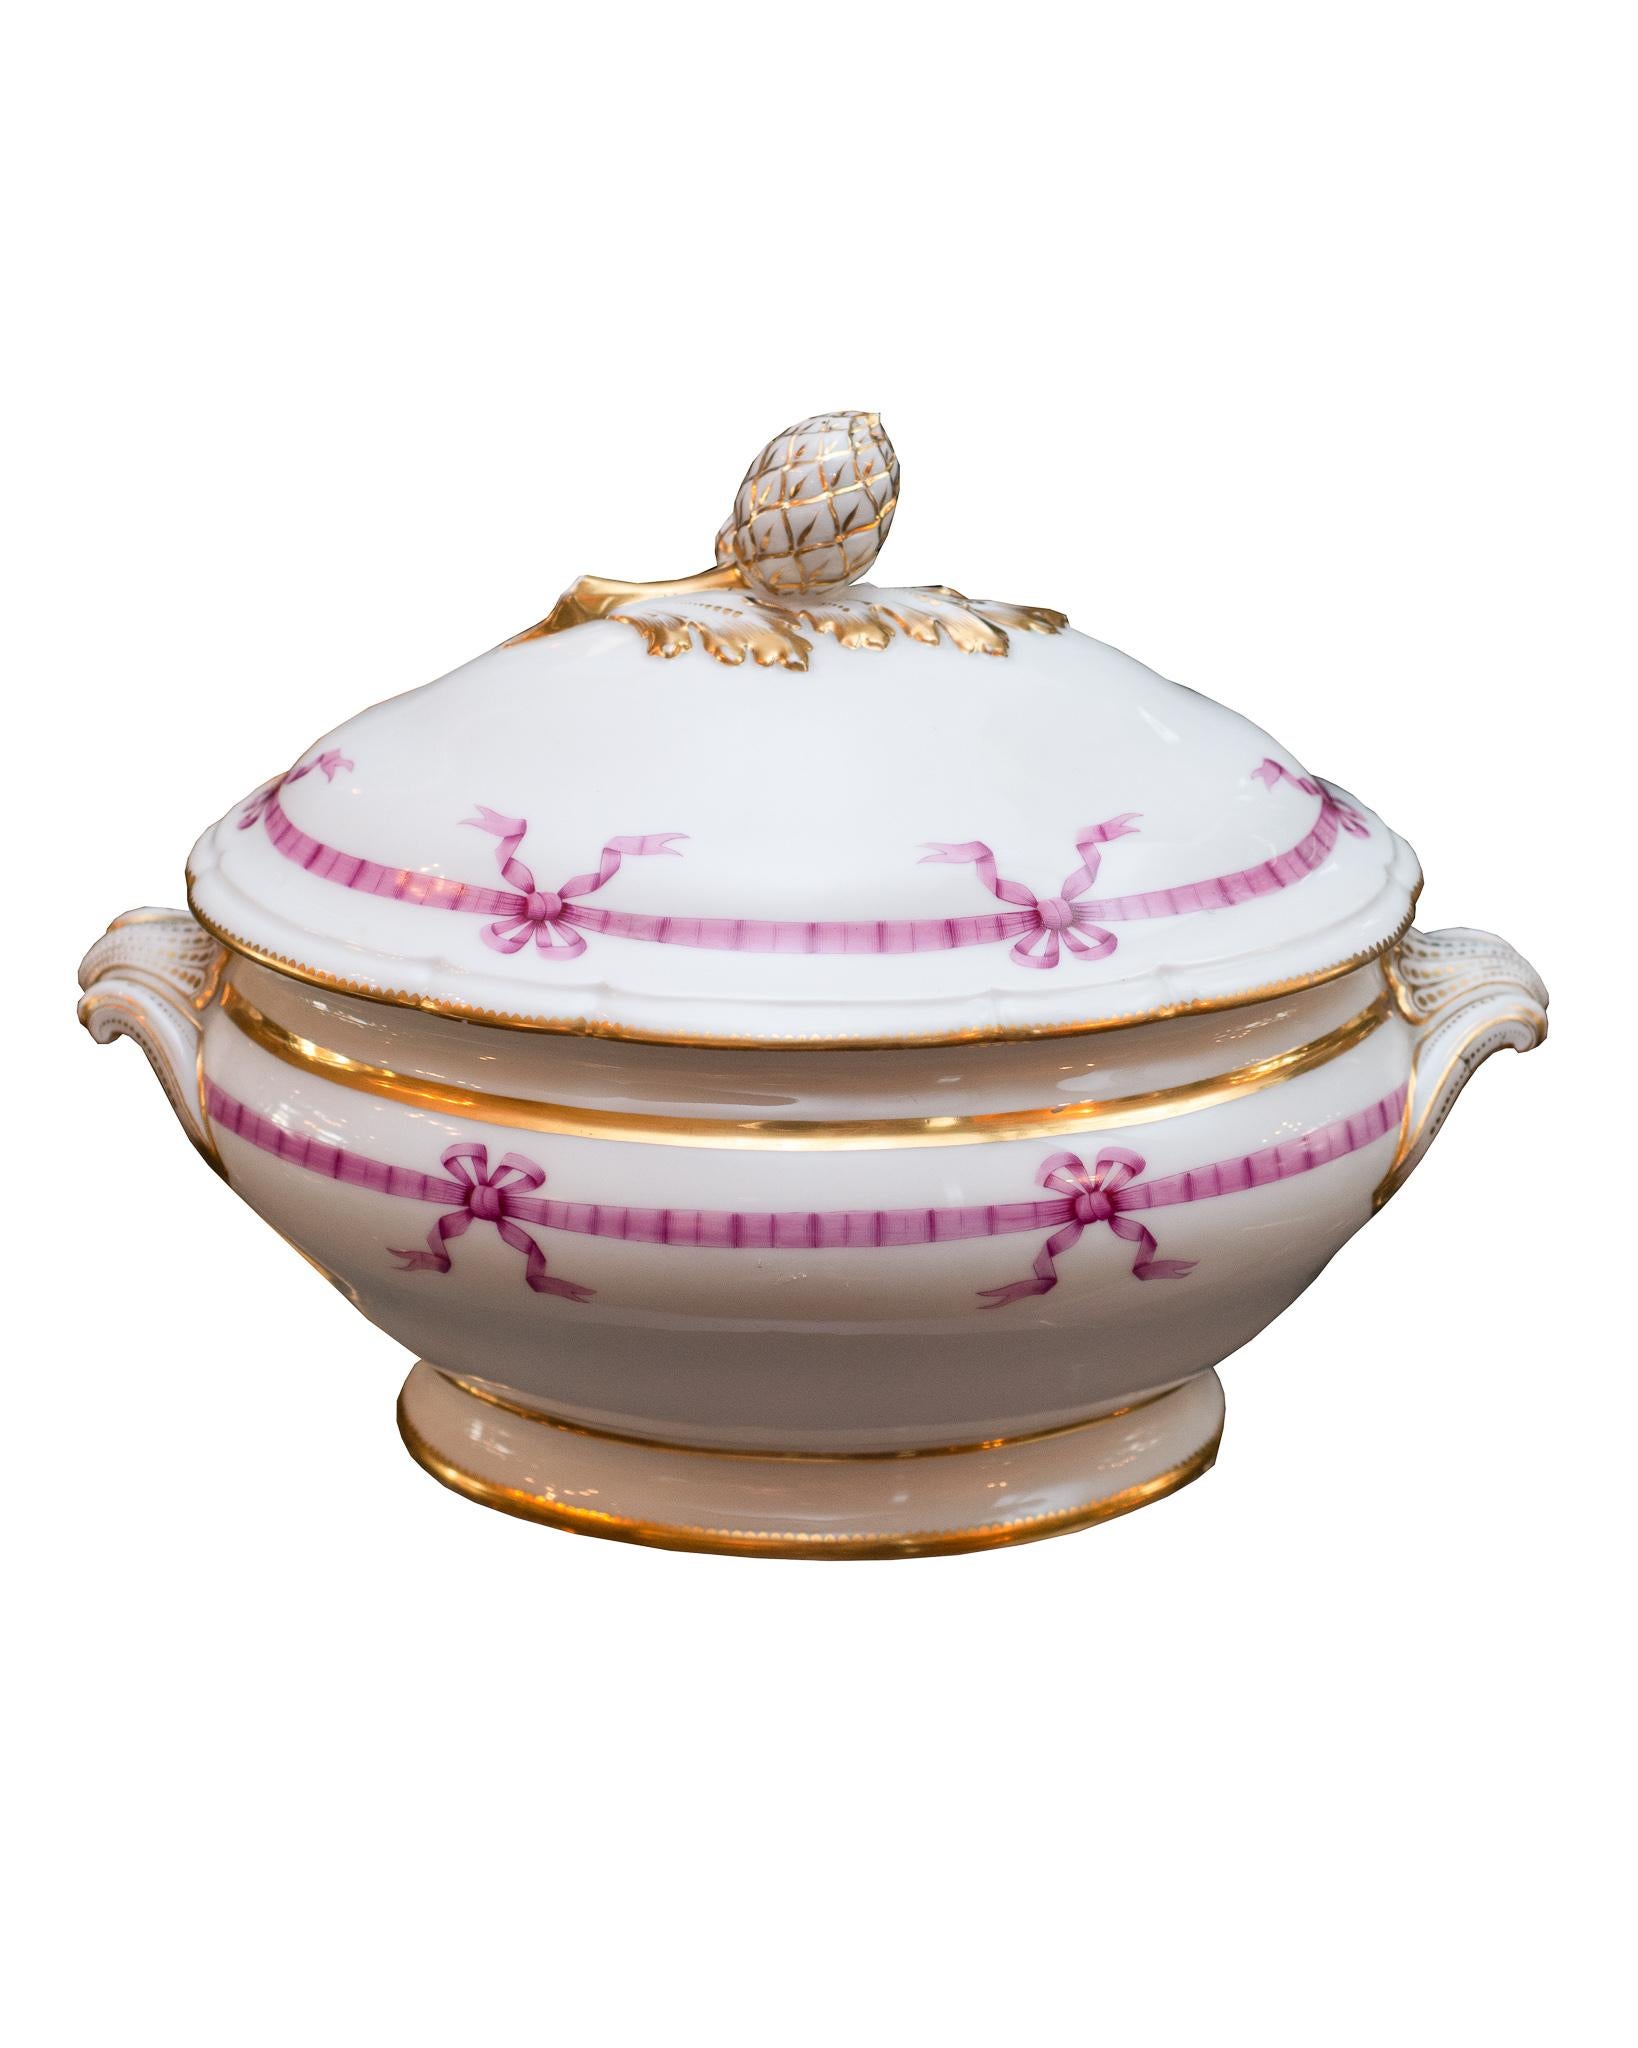 Un magnifique service de table français ancien de 22 pièces vers 1850 avec un design de ruban rose. L'ensemble comprend : 12 assiettes à dîner- 9,5